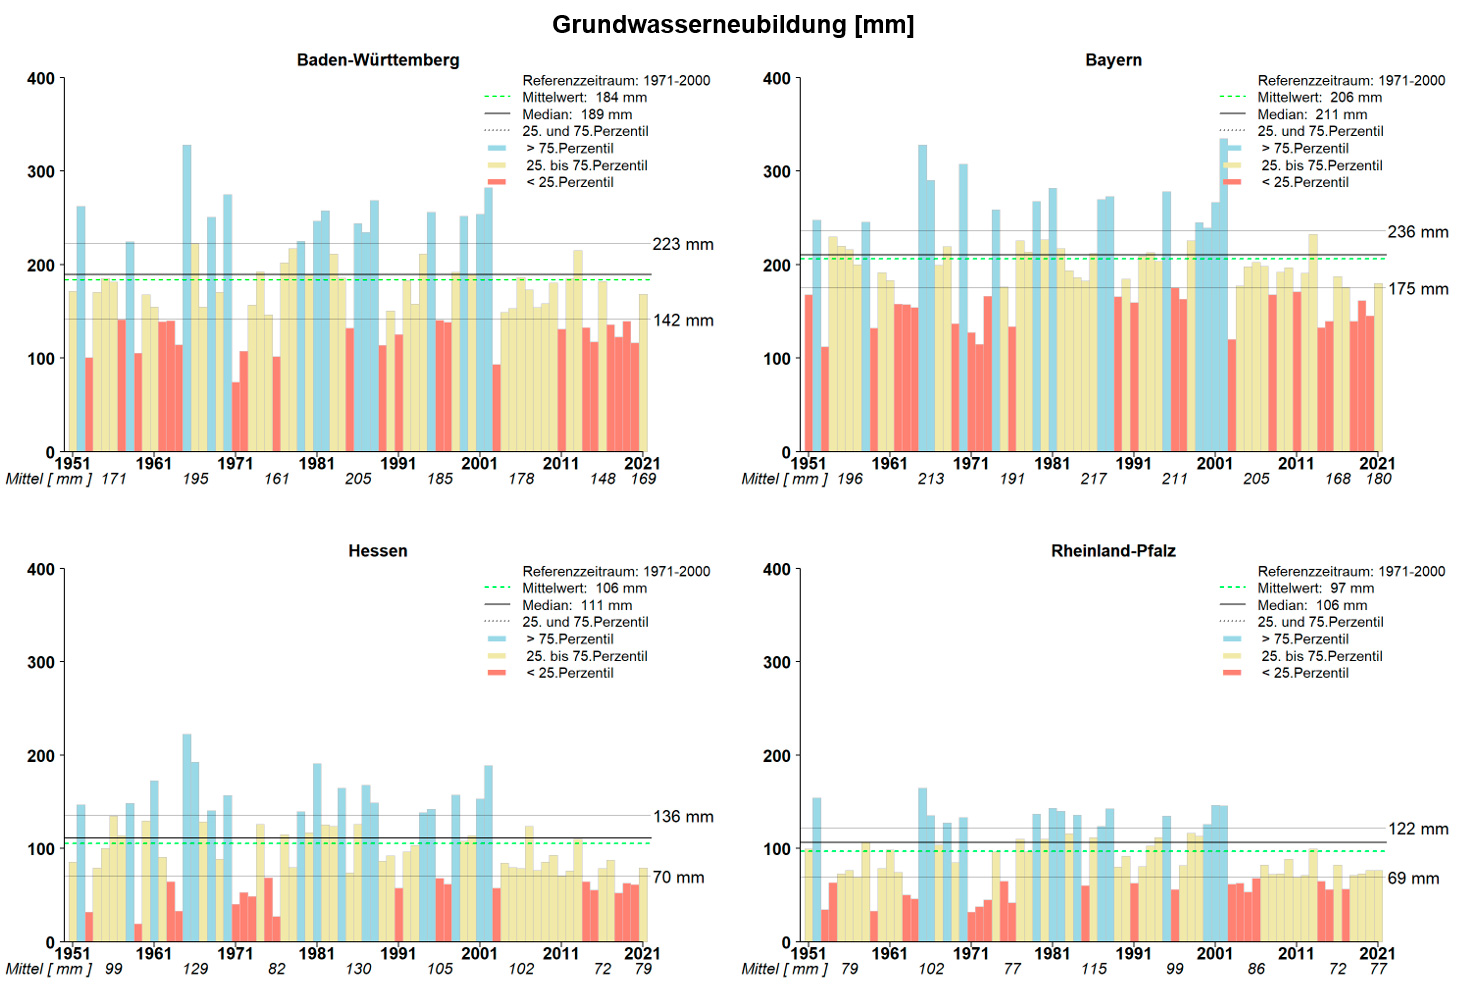 Vier Balkendiagramme der jährlichen Grundwasserneubildung, jeweils für Baden-Württemberg, Bayern, Hessen und Rheinland-Pfalz von 1951 bis 2021, in dem jeder Einzeljahreswert in mm als ein Balken dargestellt ist. Der Mittelwert im Referenzzeitraum 1971 bis 2000 bewegt sich zwischen 97 mm (Rheinland-Pfalz) und 206 mm (Bayern). Anhand des 25. Perzentil und 75. Perzentil der Referenzperiode wurden alle Balken der Einzeljahre farblich klassifiziert in blau (hohe Grundwasserneubildung), gelb (Grundwasserbildung im durchschnittlichen Bereich) oder rot (geringe Grundwasserneubildung). Bis 2003 traten zwar immer wieder als rot klassifizierte Jahre auf. Im Ausgleich dazu gab es jedoch auch stets Jahre, die als blau eingestuft wurden. Seit 2003 gibt es kein Jahr mehr mit viel Grundwasserbildung, sondern nur noch Jahre mit normaler oder geringer Grundwasserneubildung. Die mittlere jährliche Grundwasserneubildung im Zeitraum 2011 bis 2020 lag beispielsweise in Baden-Württemberg mit 148 mm weit unter dem Mittel des Referenzzeitraums (184 mm).